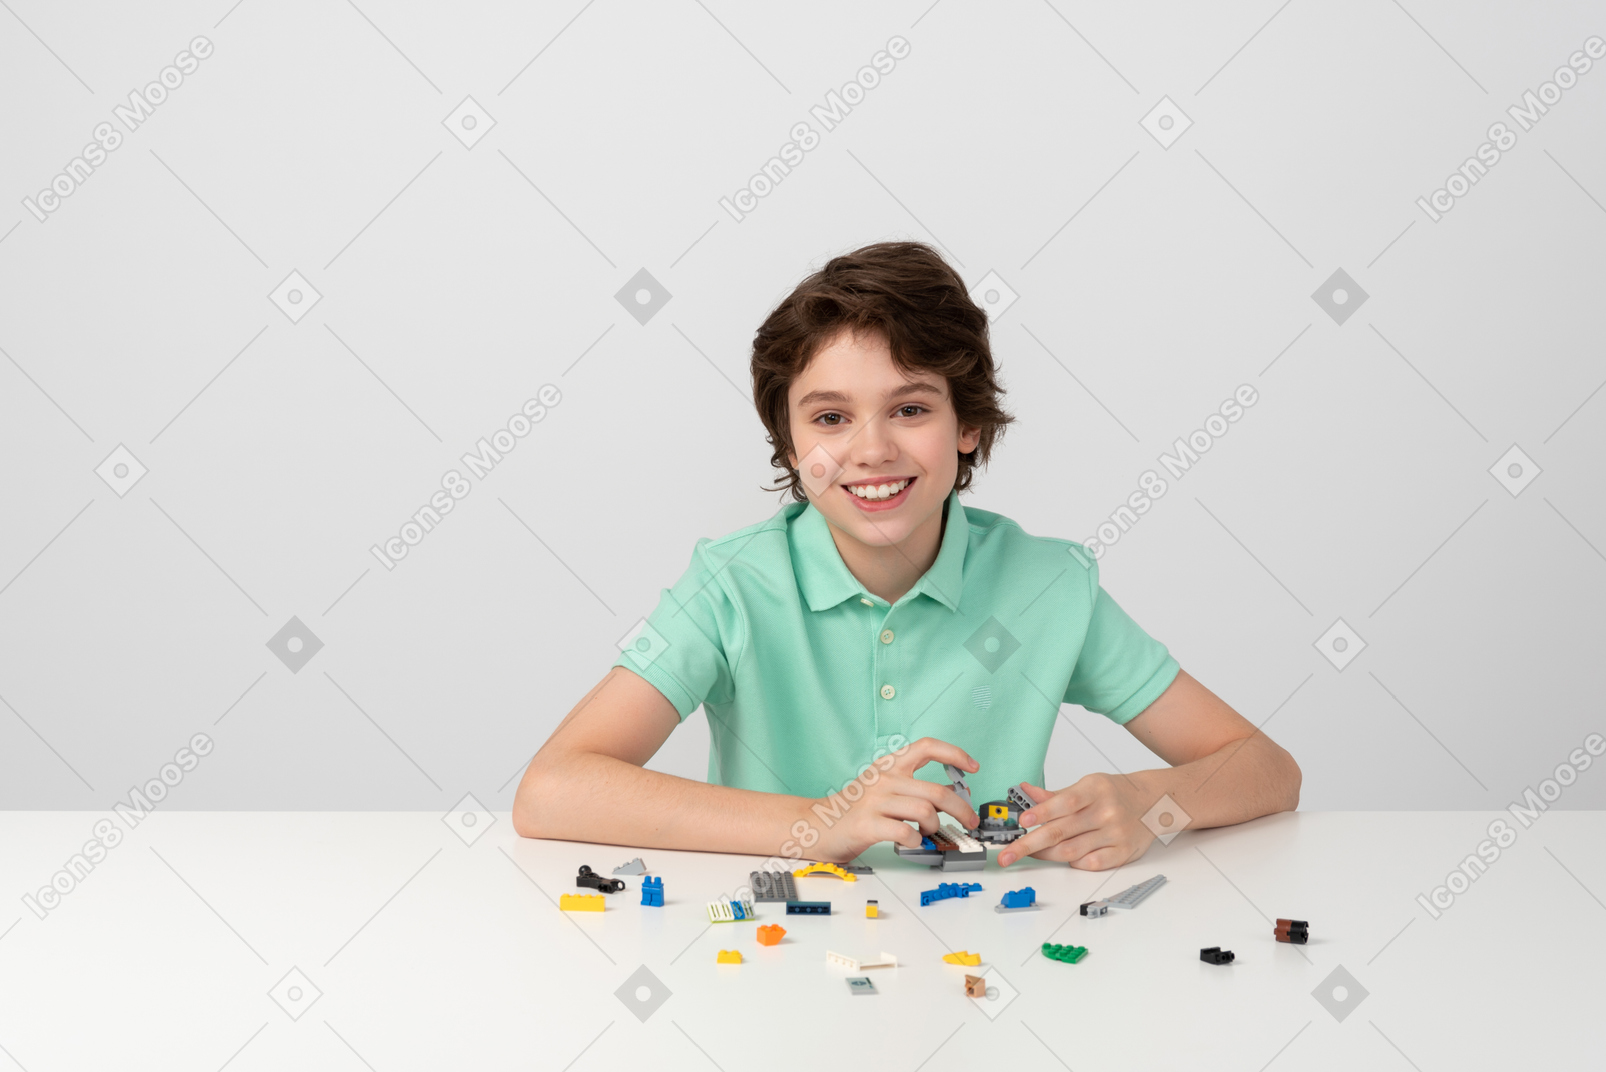 Menino alegre brincando com blocos de construção